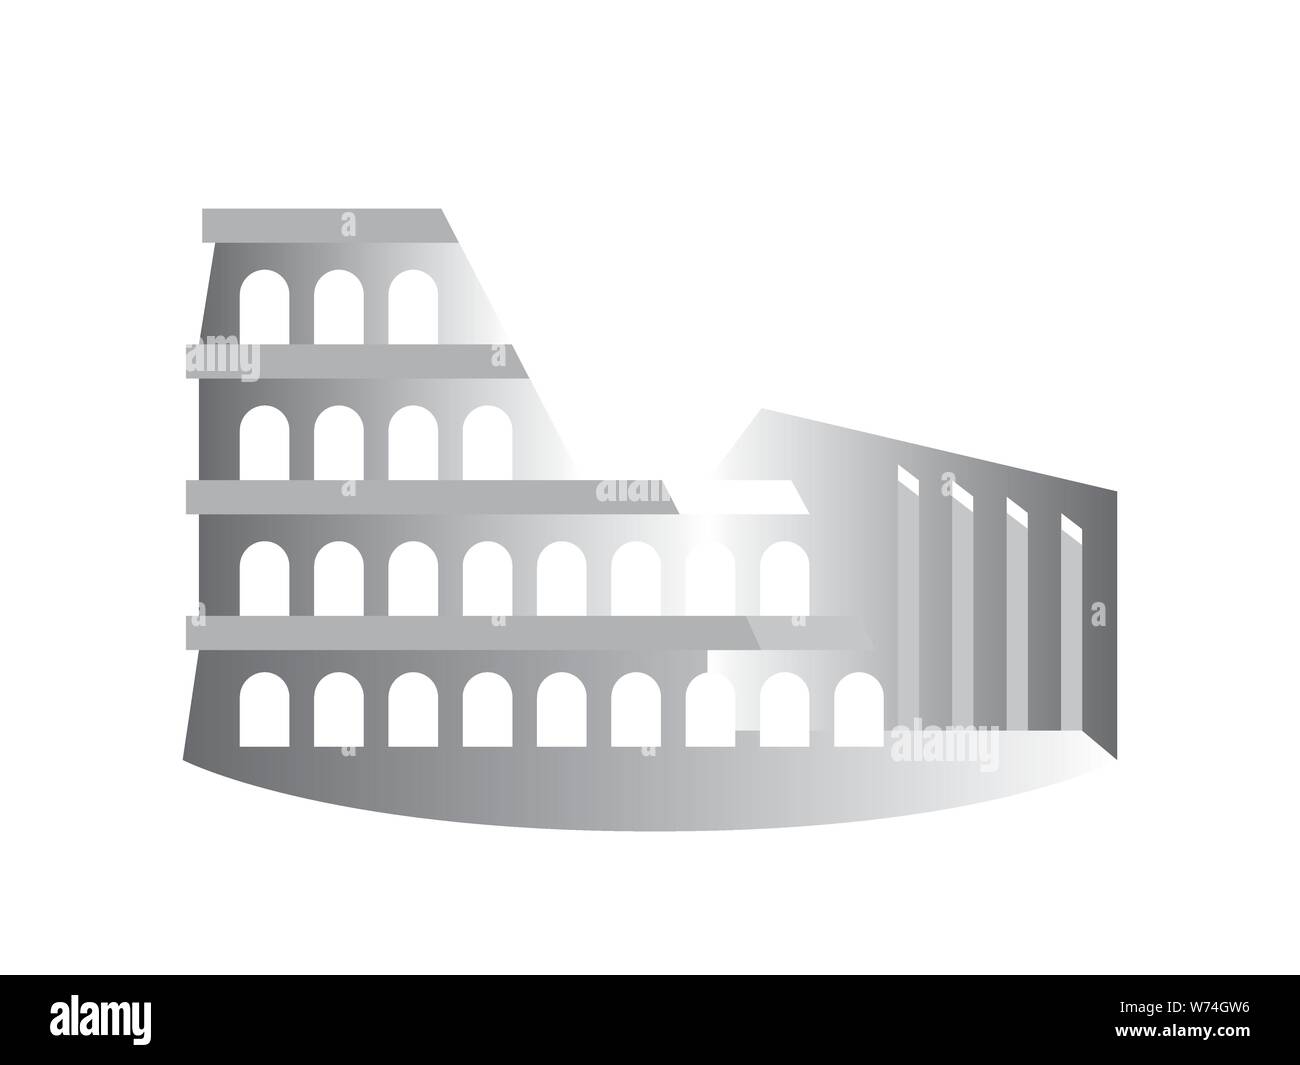 Le Colisée (Colisée), également connu sous le nom de l'amphithéâtre Flavien, Rome, Italie. Dessin stylisé. Illustration de Vecteur